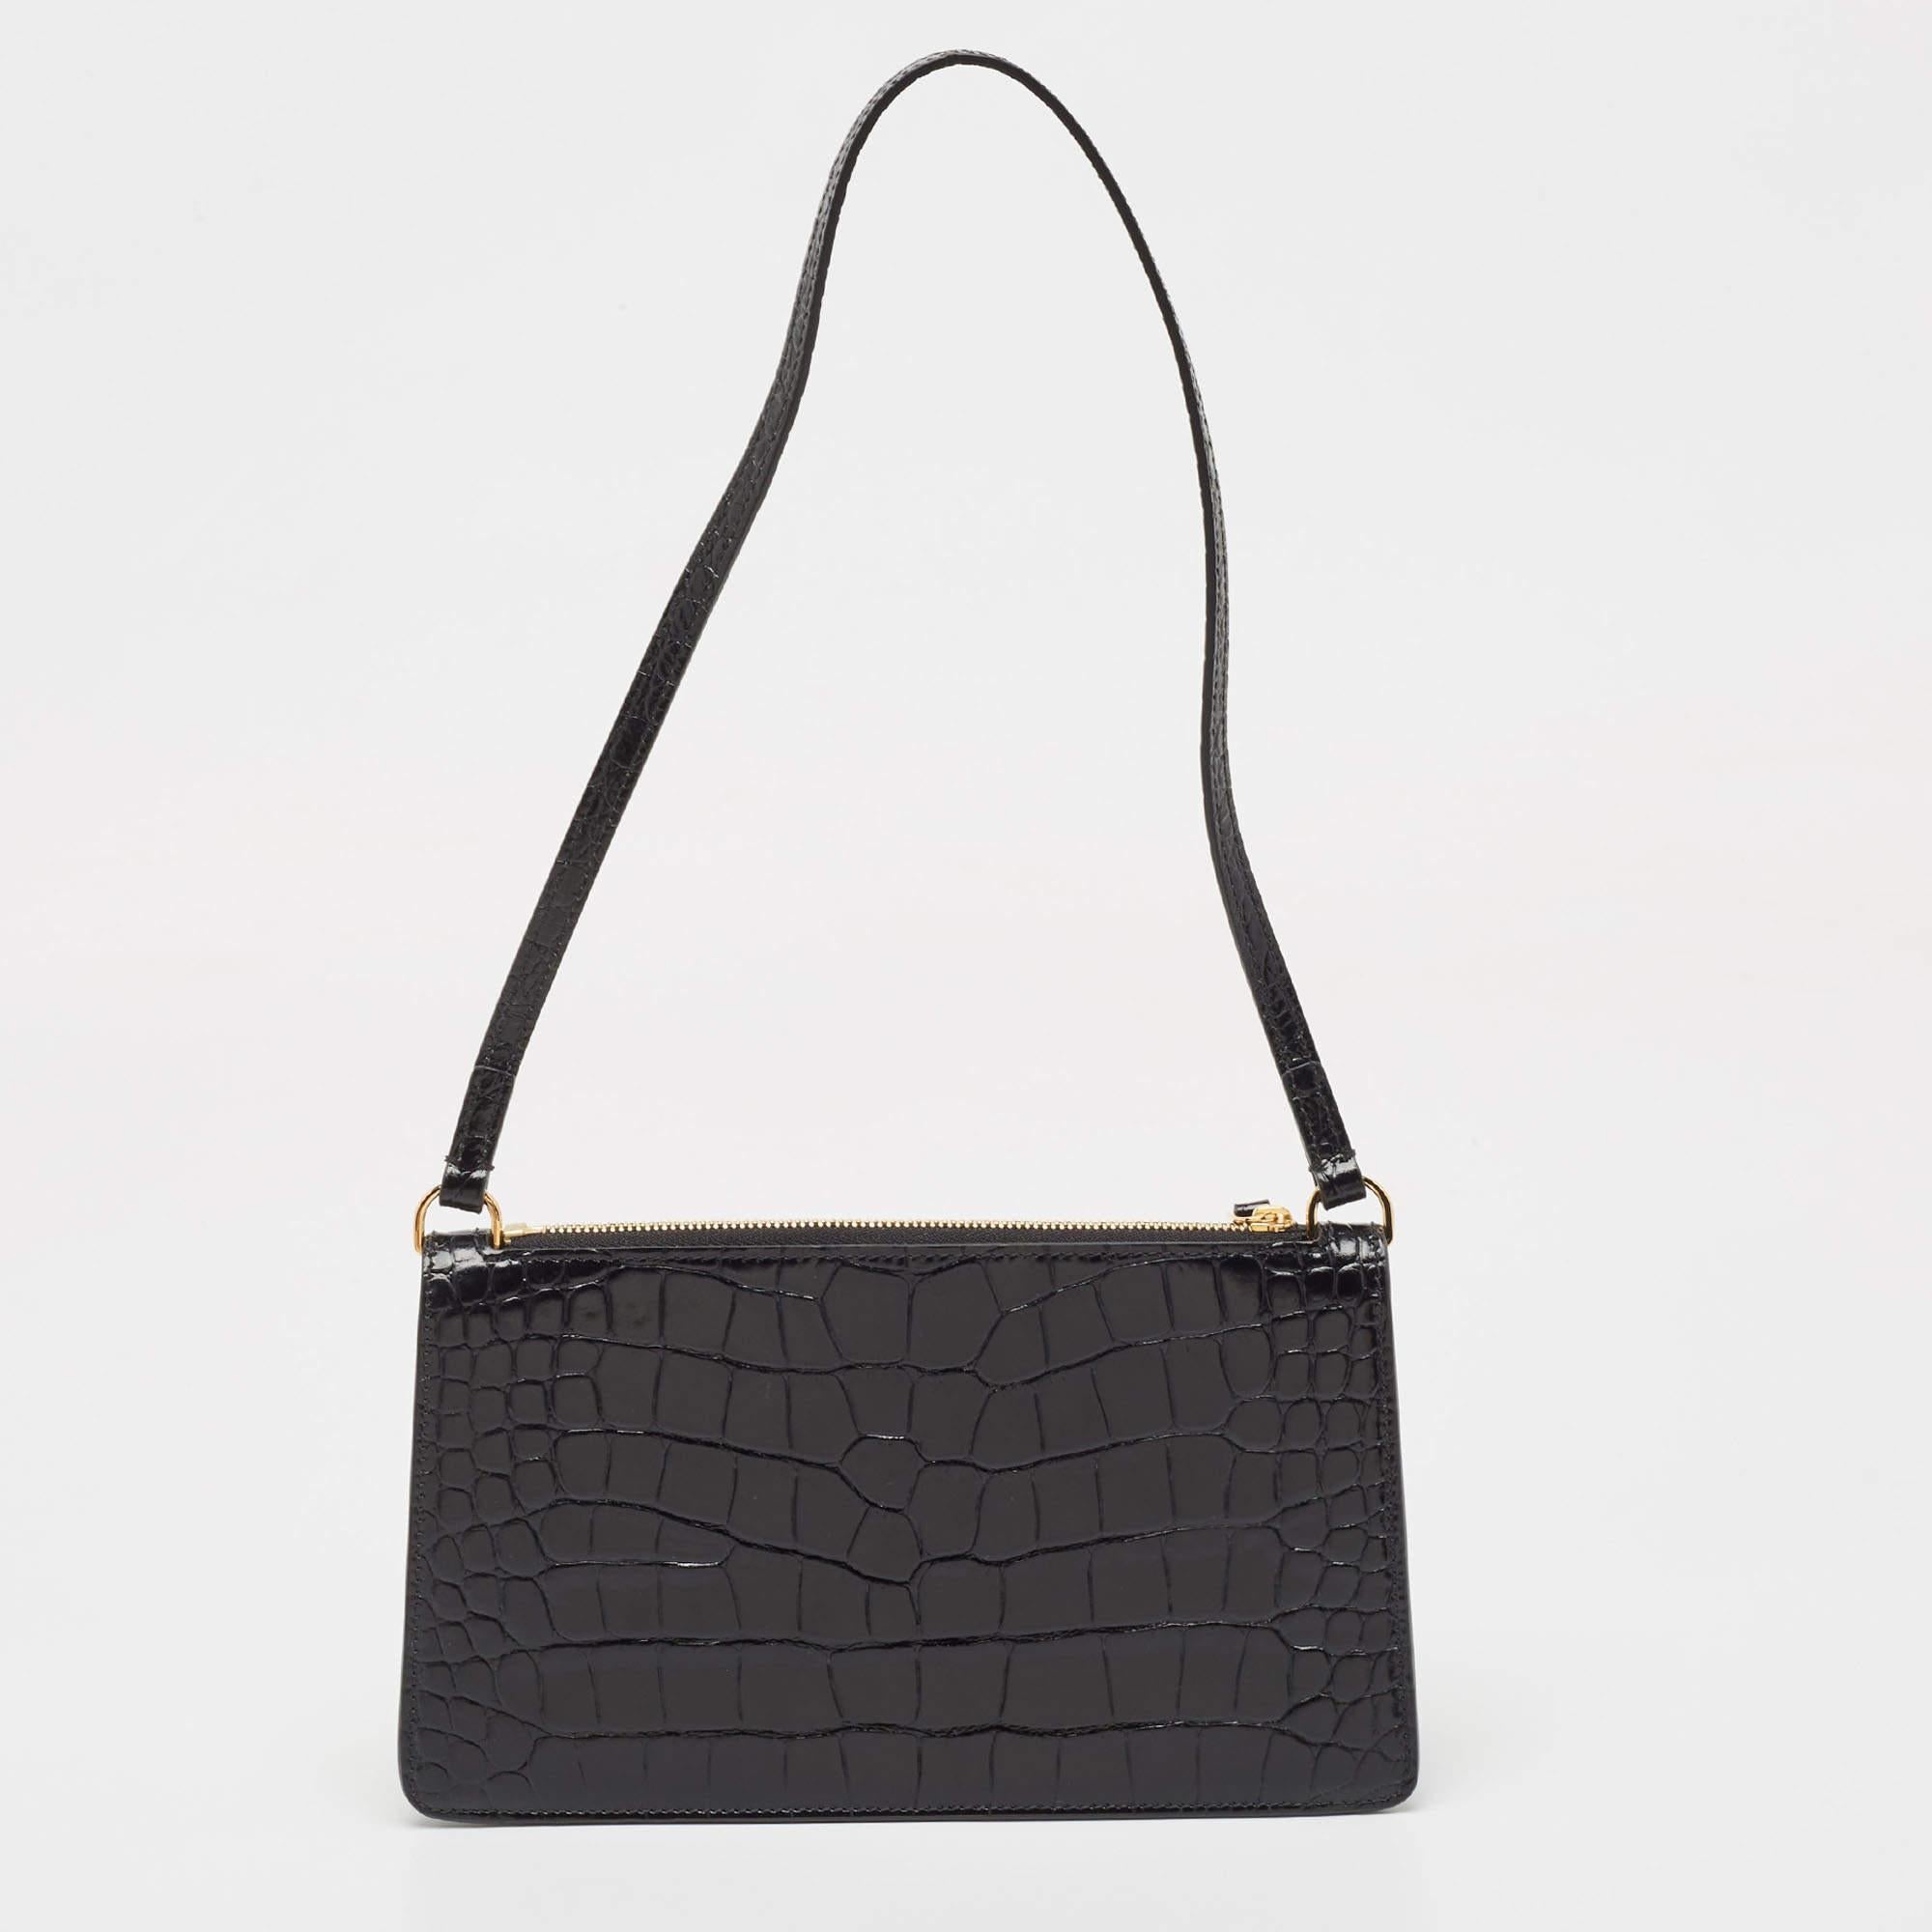 Burberry Black Croc Embossed Leather Shoulder Bag For Sale 2